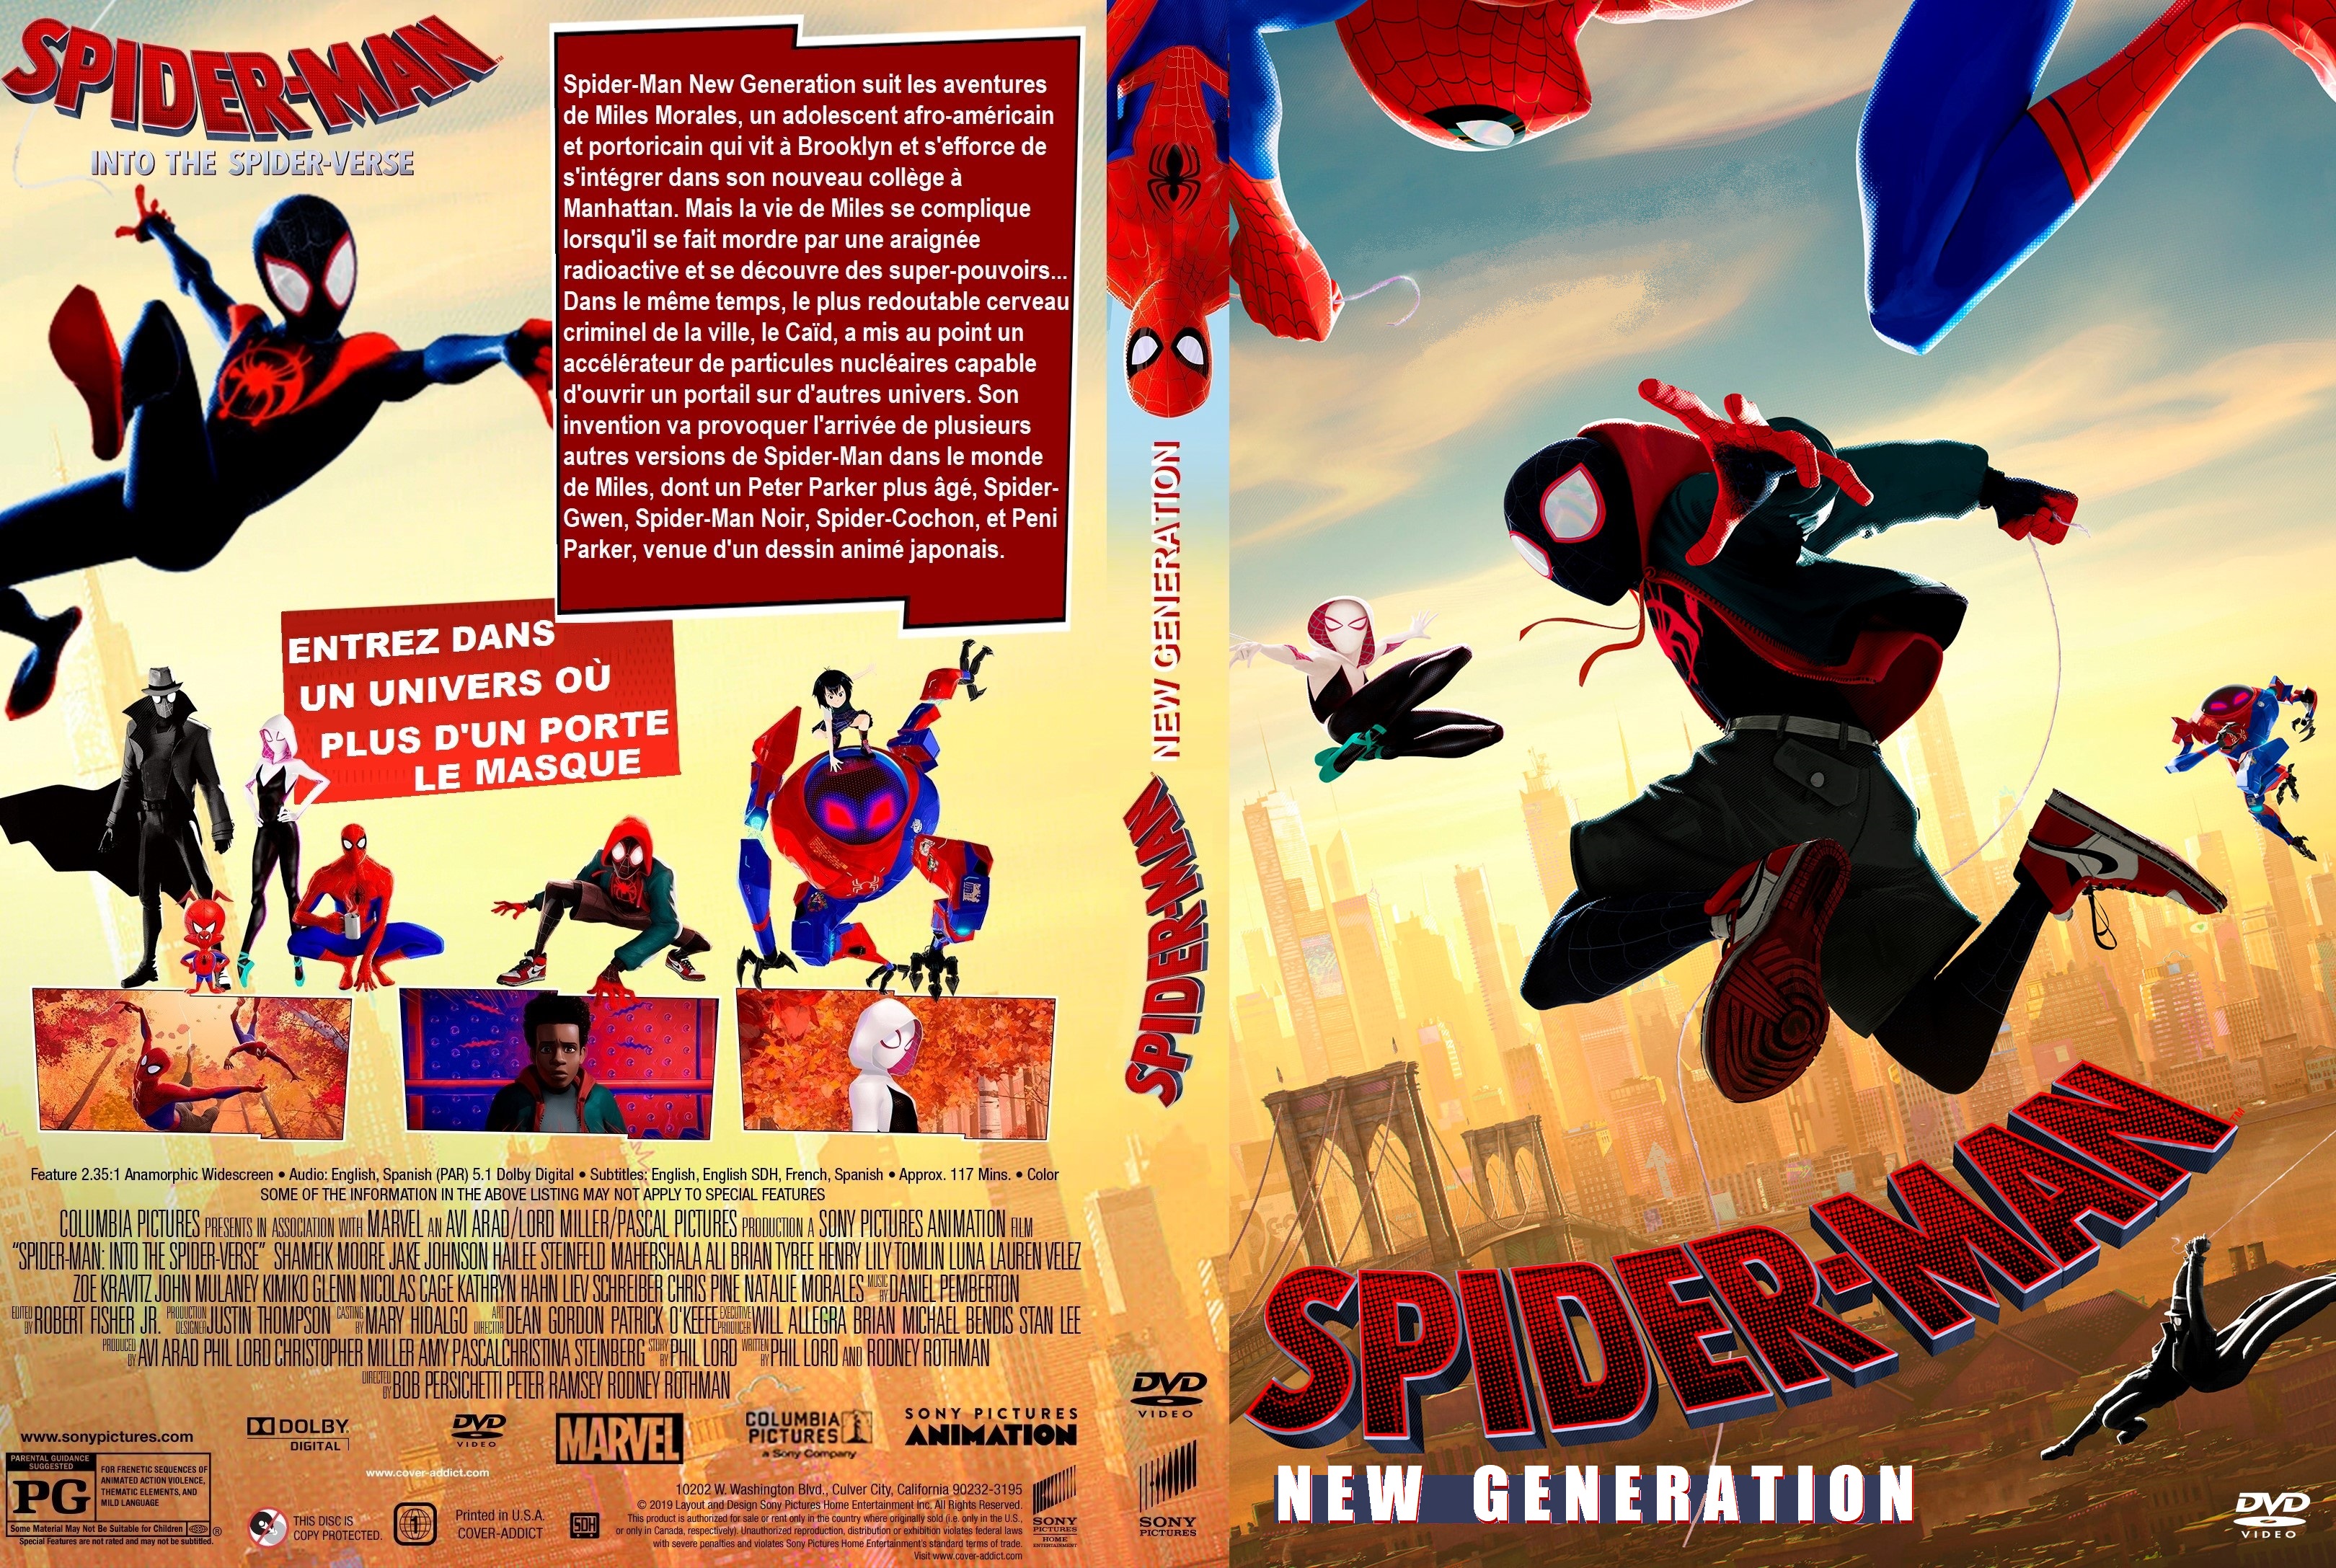 Jaquette DVD Spider-Man New Generation custom v4